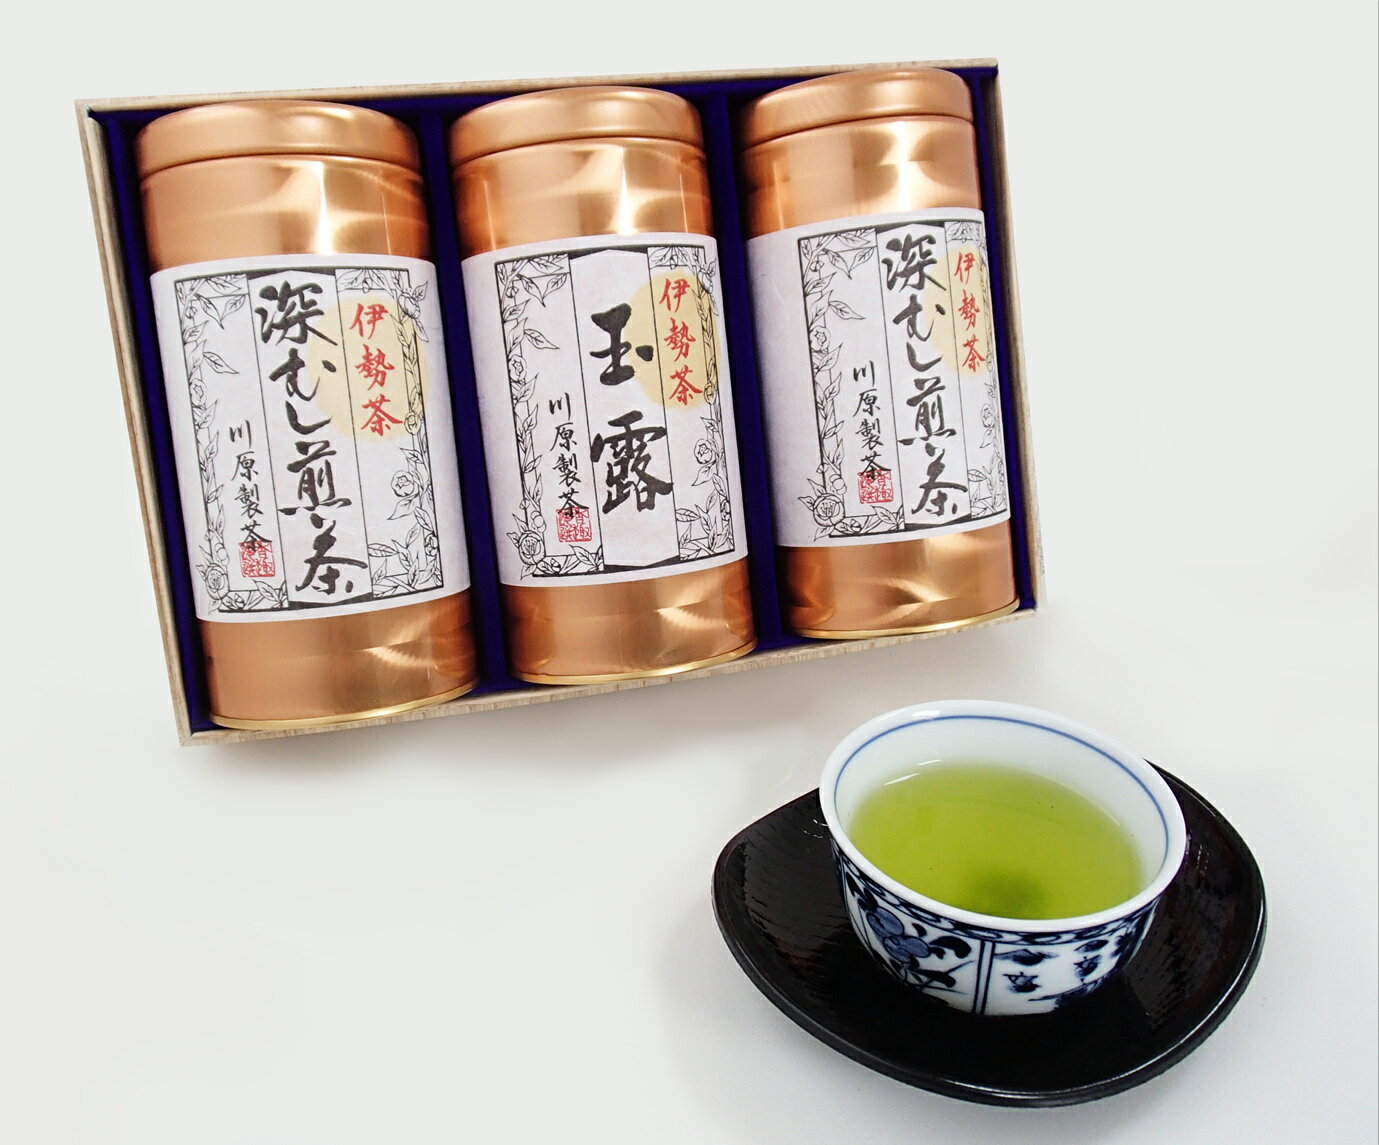 【ふるさと納税】日本三大産地のひとつ 伊勢茶 詰め合わせ B kh-04 ふるさと納税 煎茶